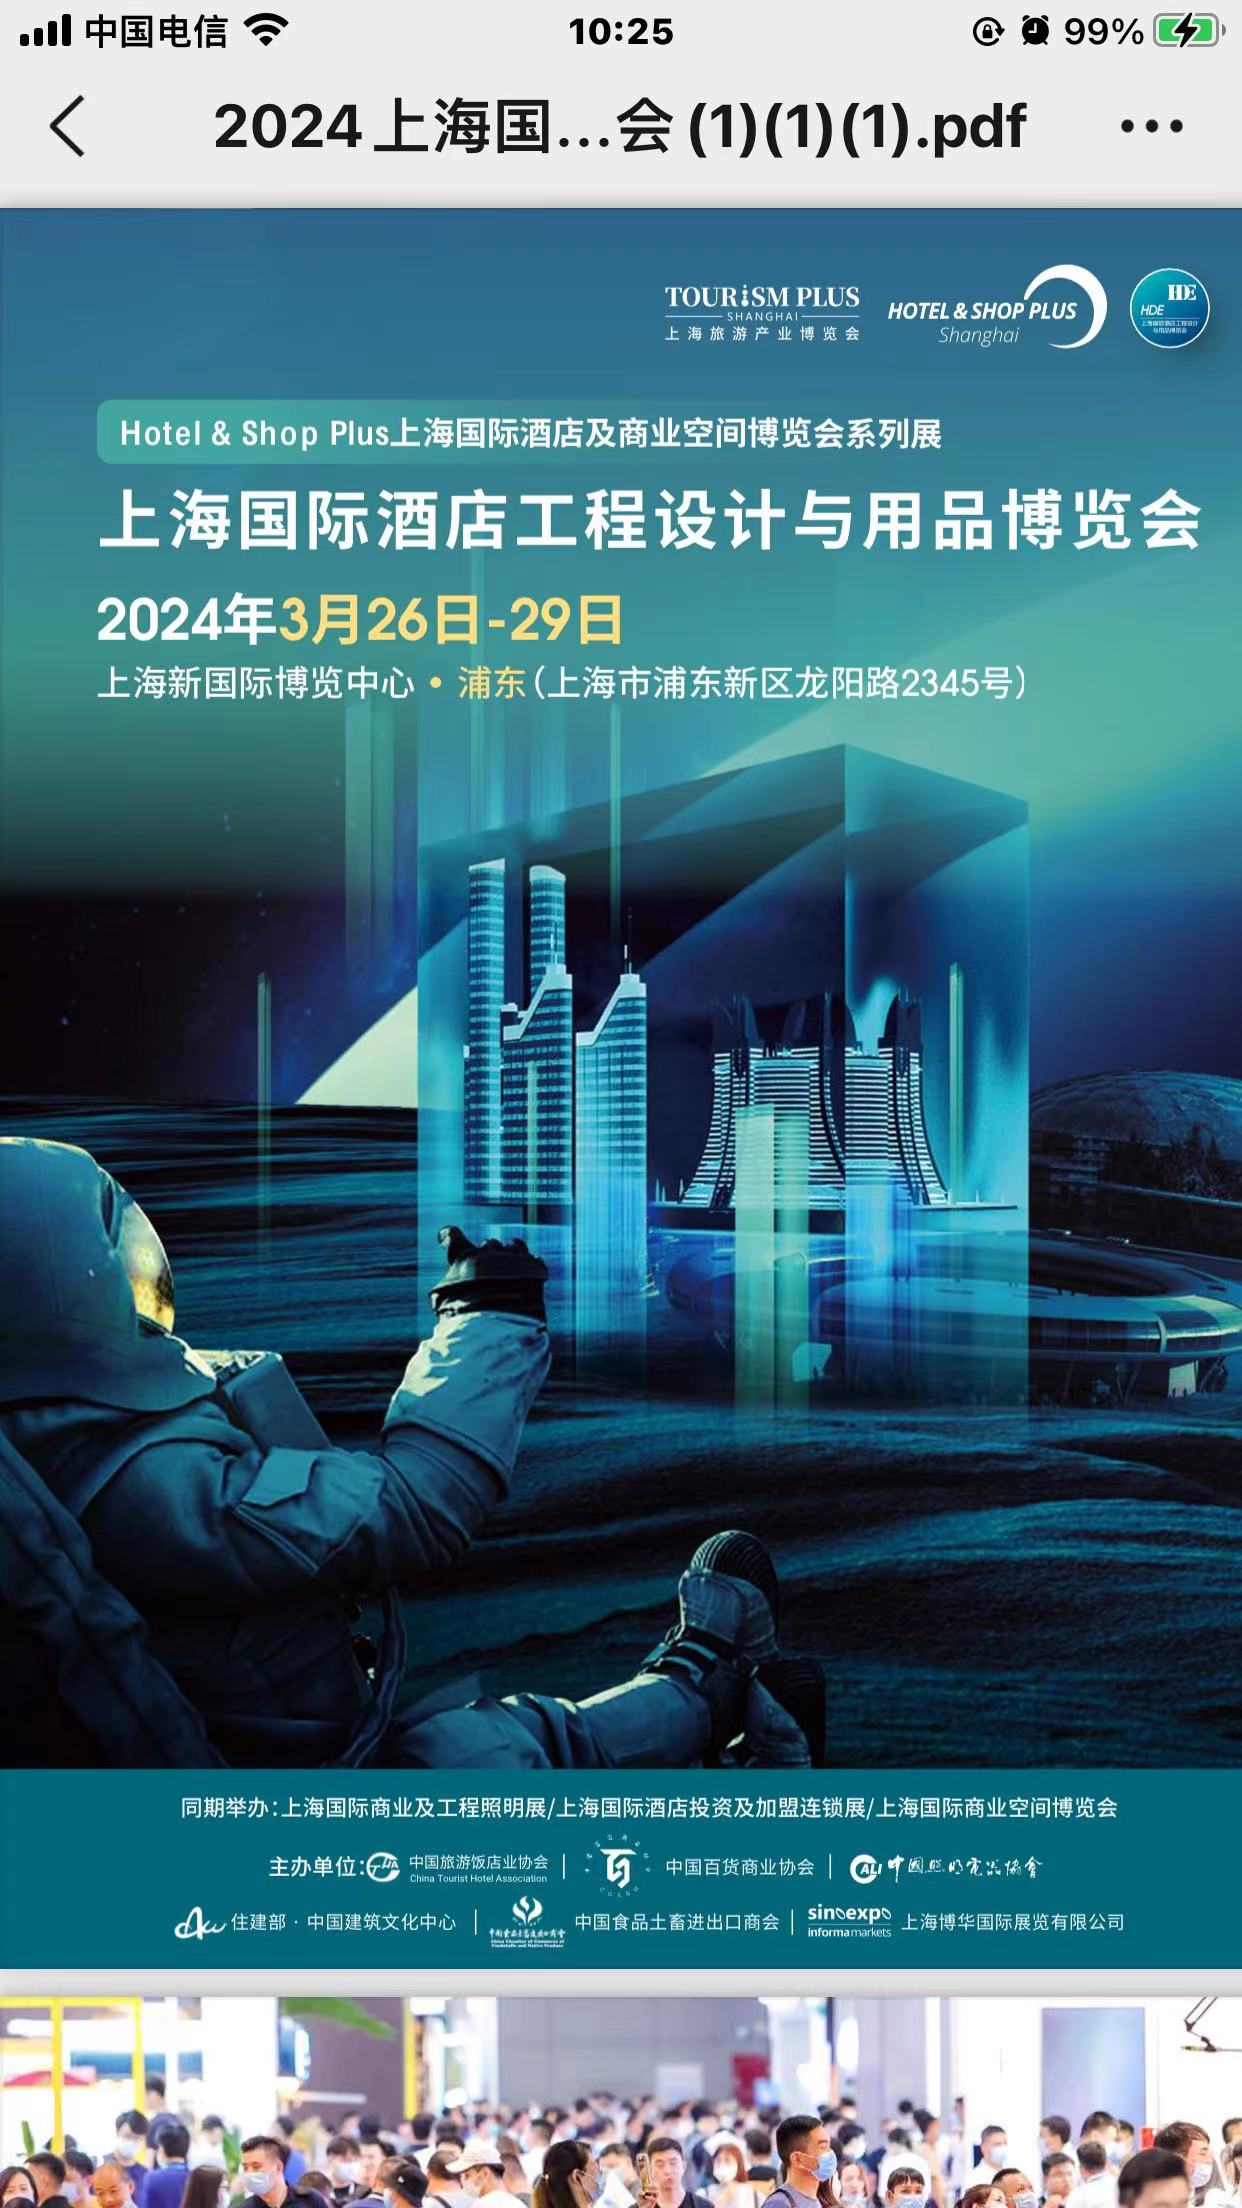 2024年上海酒店电动窗帘展览会-3月26日-29日举办